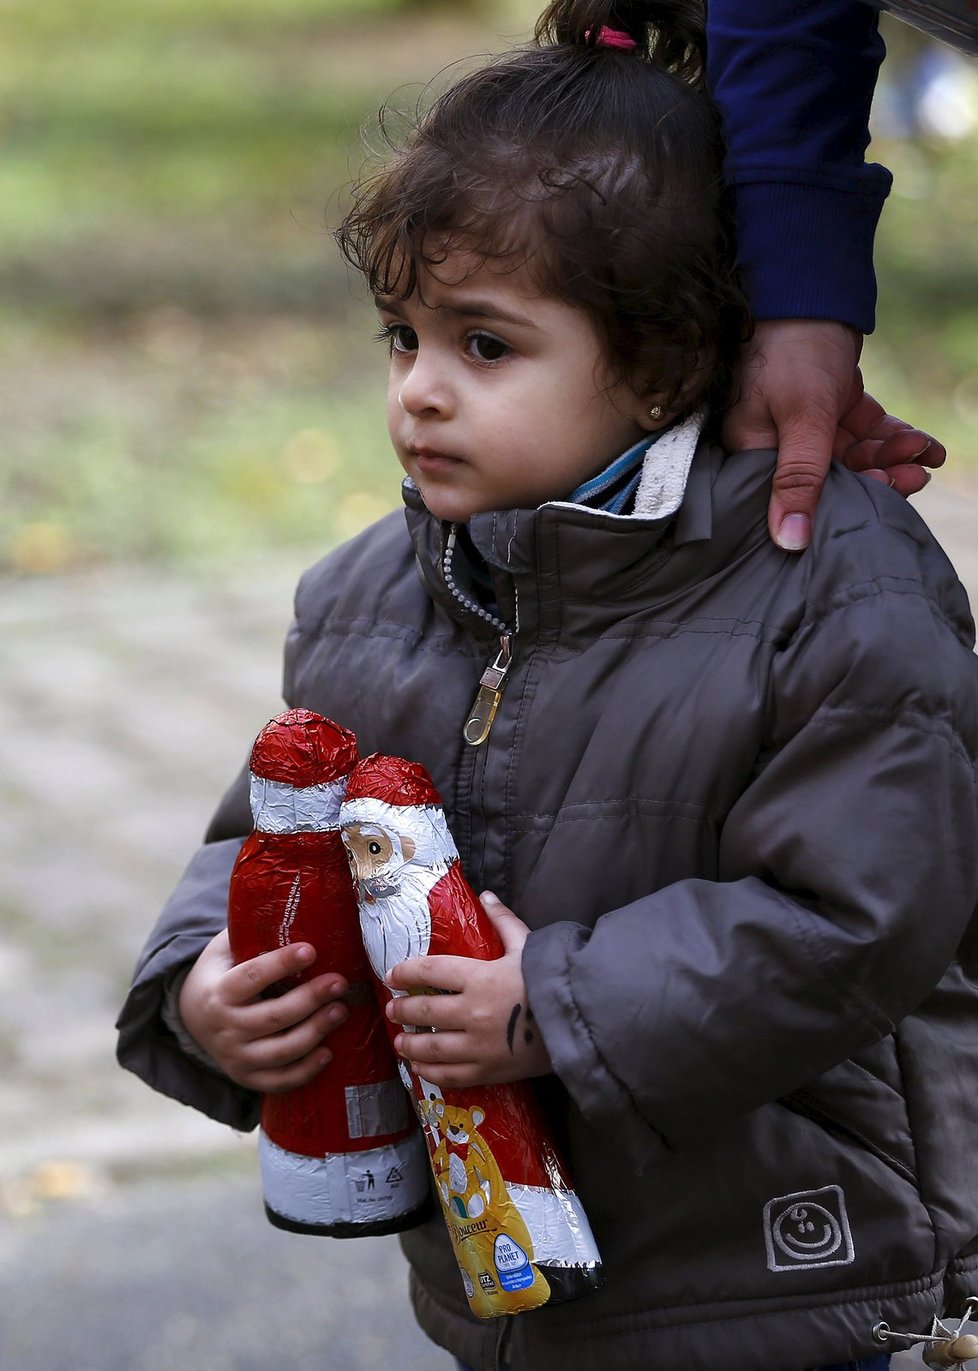 Více než 10 tisíc dětských uprchlíků zmizelo: Můžou je zneužívat gangy, varuje Europol.